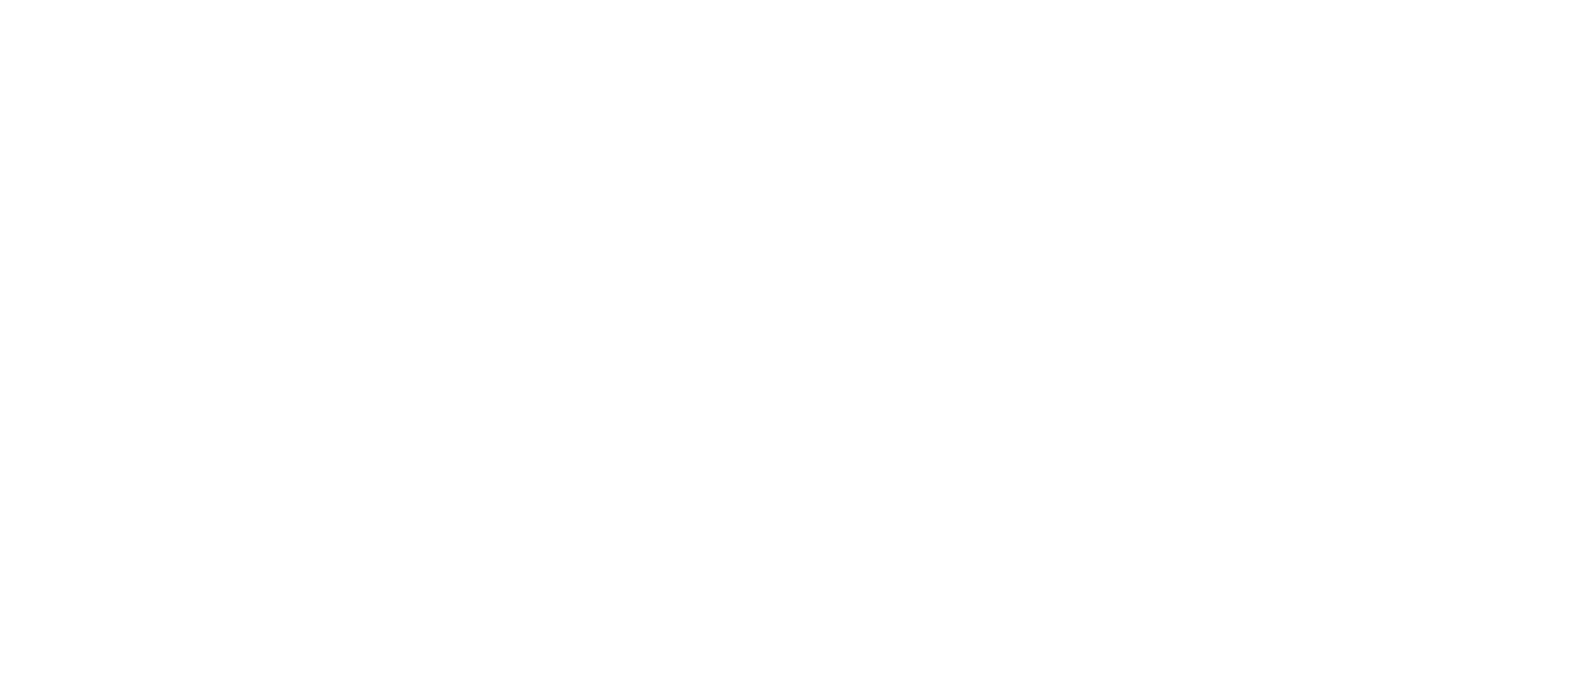 Pennon Group logo grand pour les fonds sombres (PNG transparent)